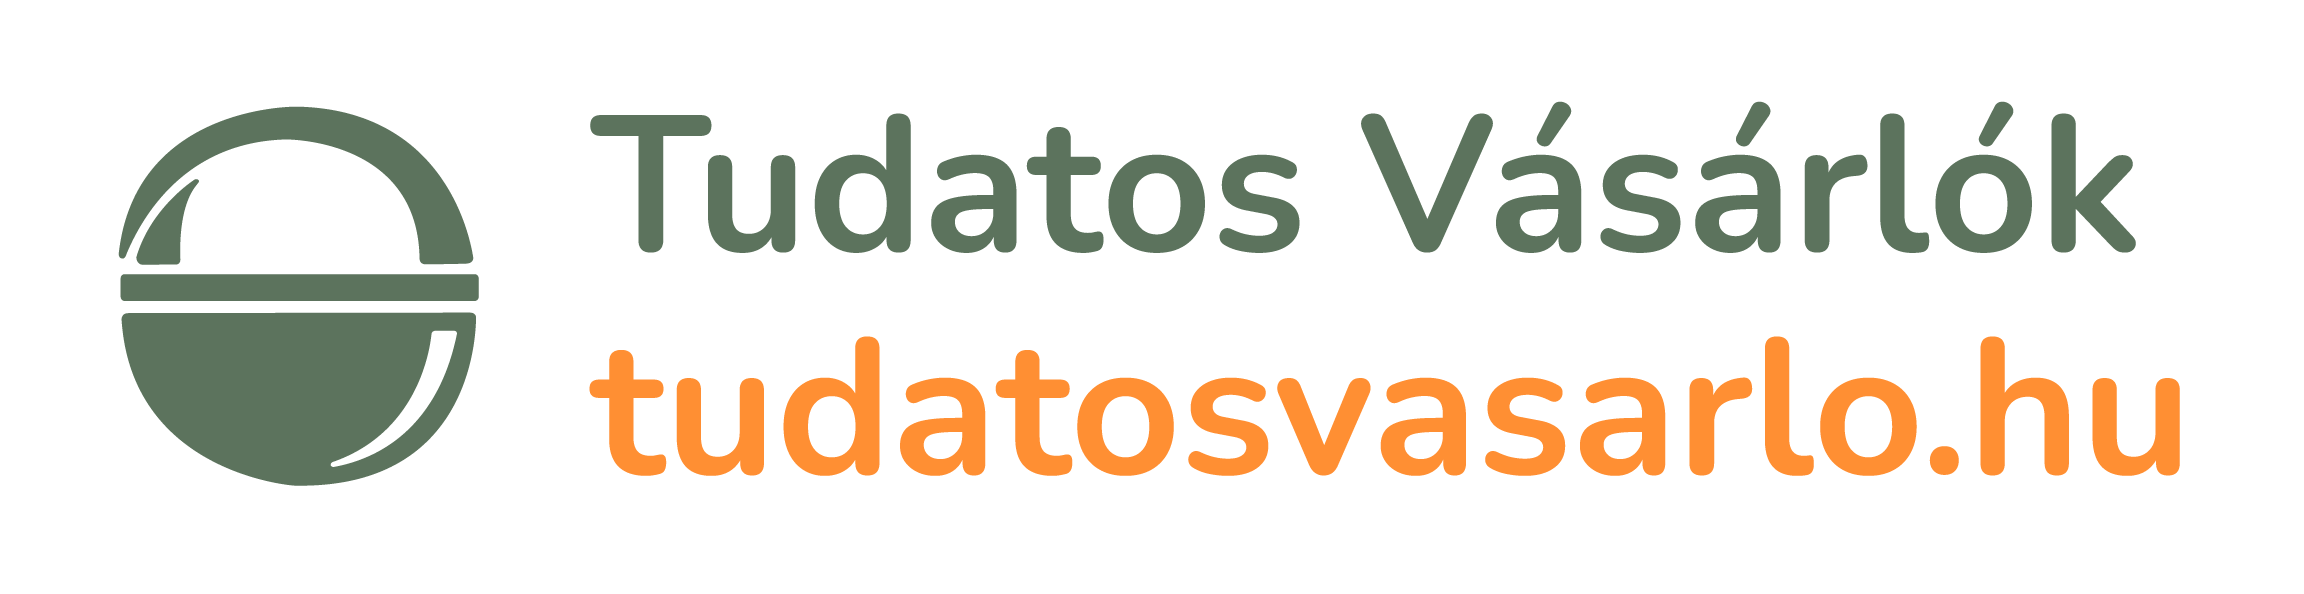 Tudatos_Vasarlok logo